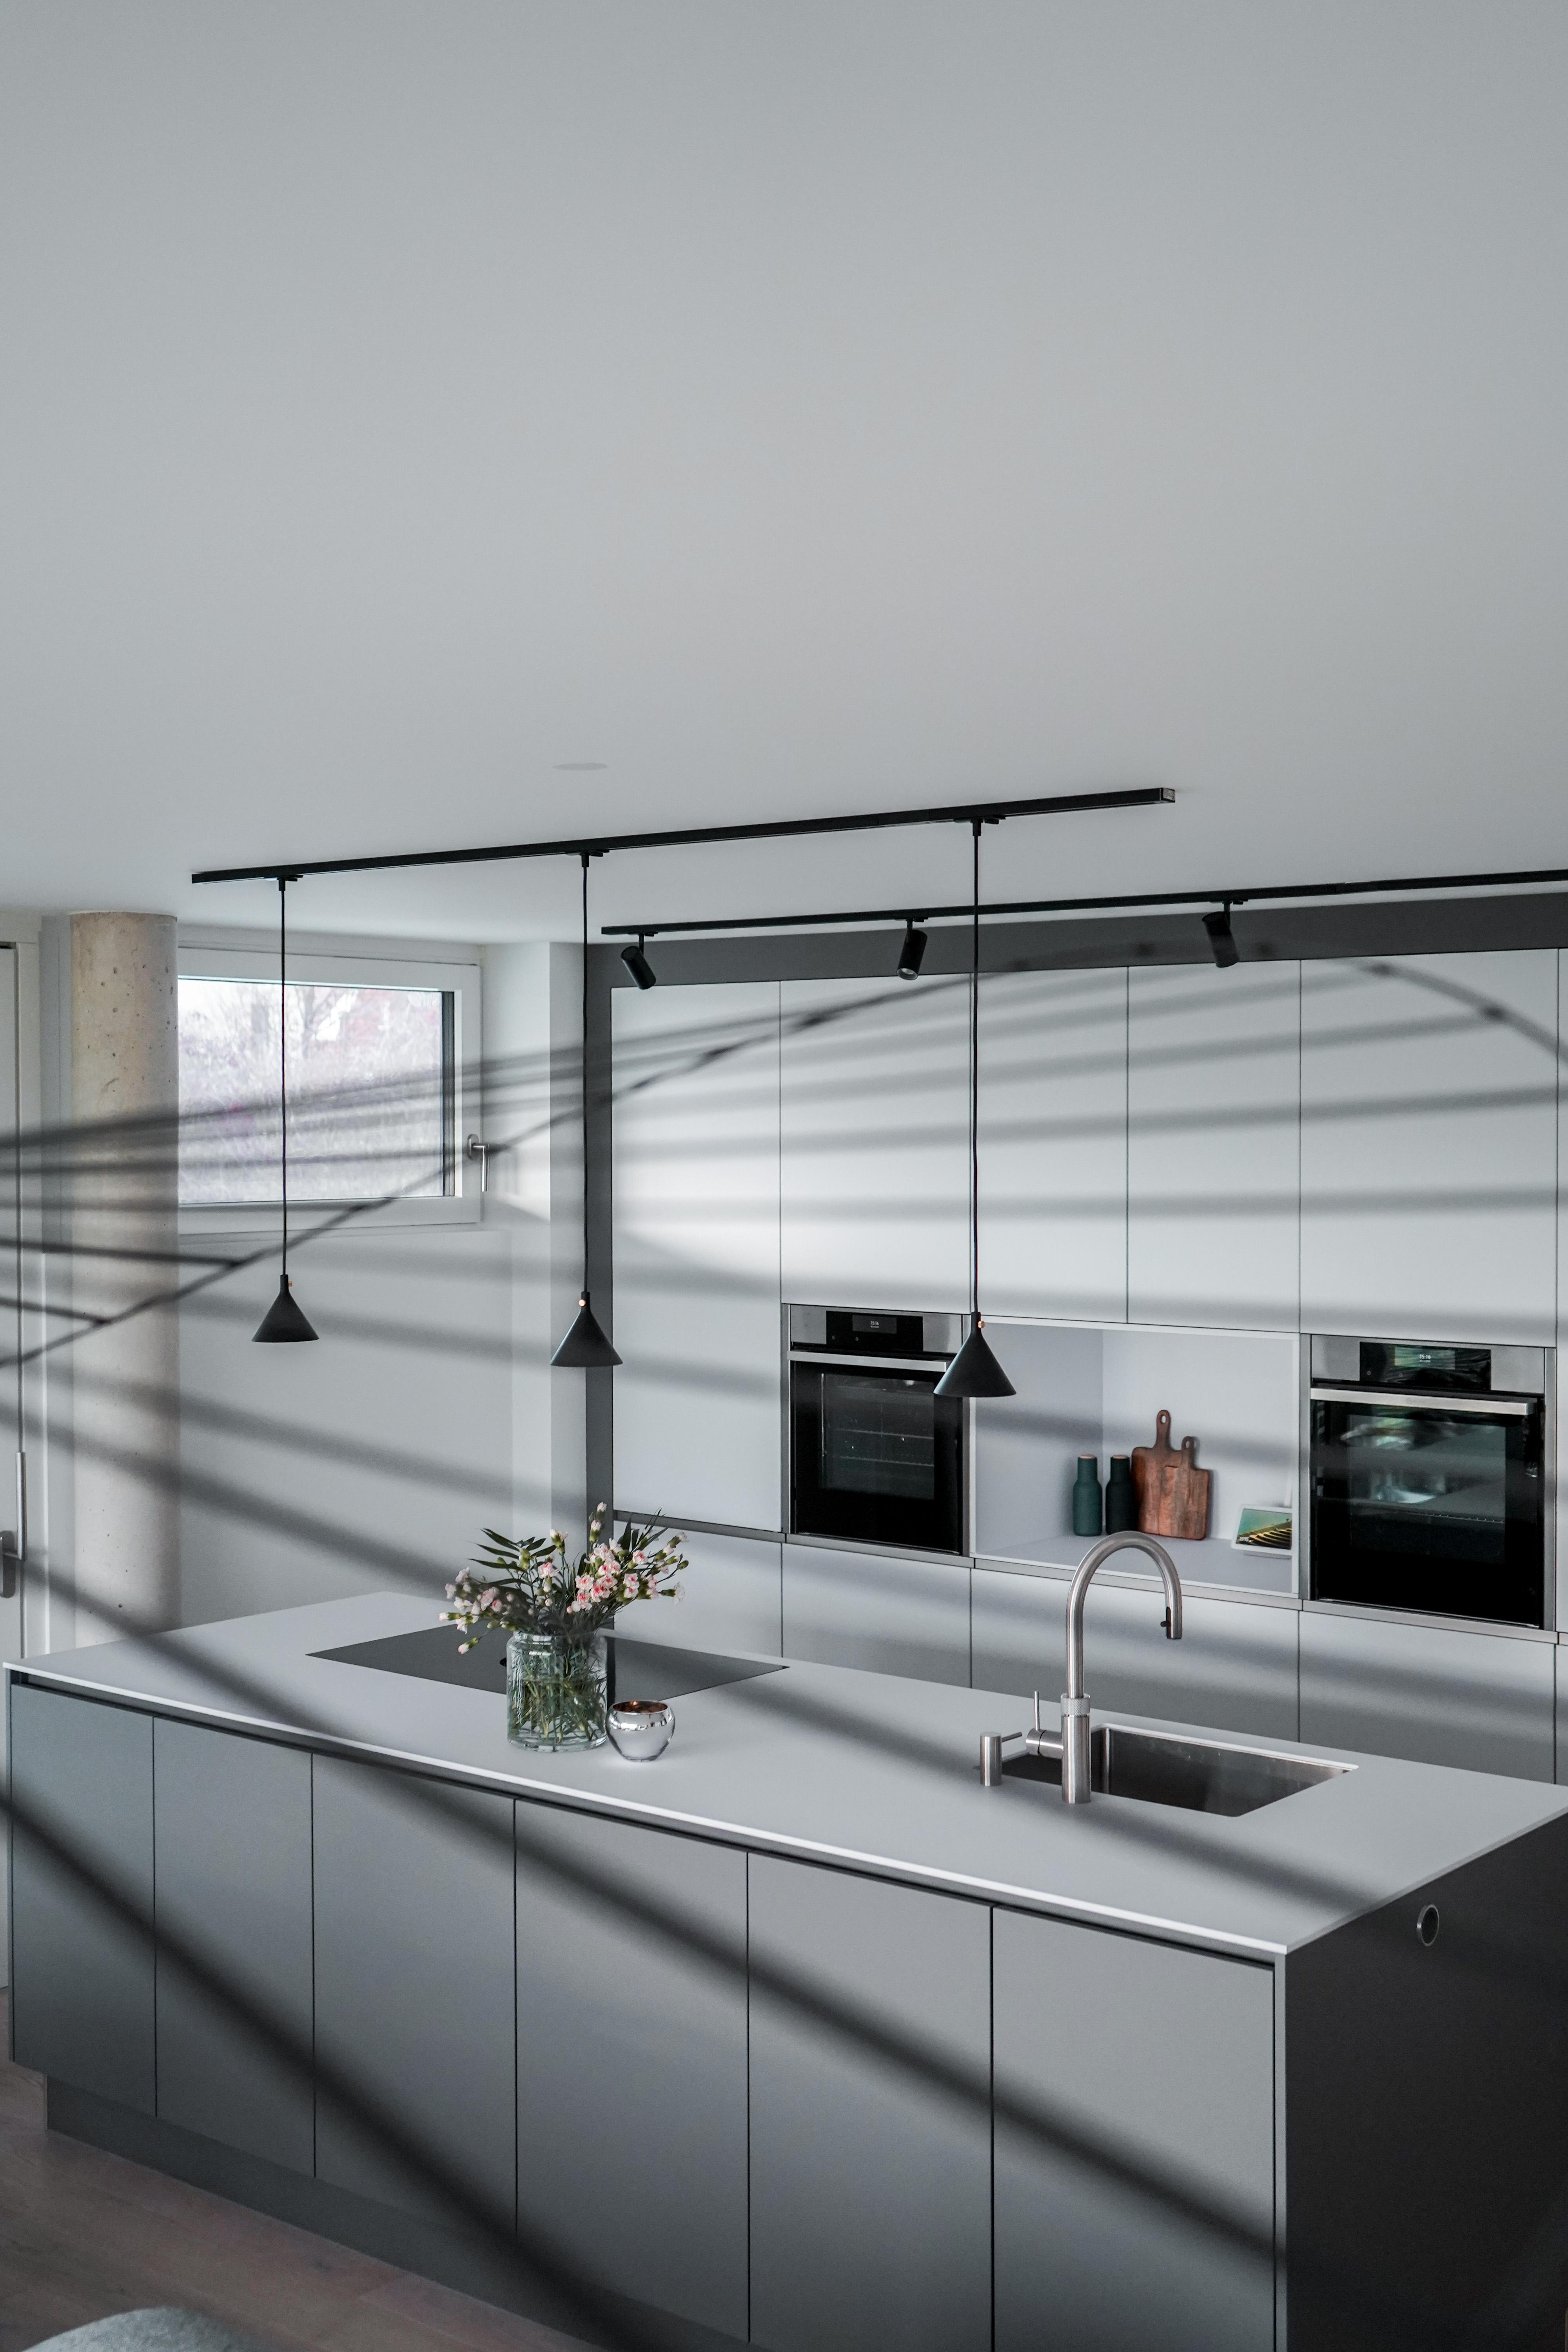 Große Küchen und Lampen Liebe 🤍
#kitchendesign #minimalismus #vertigolamp #scandistyle